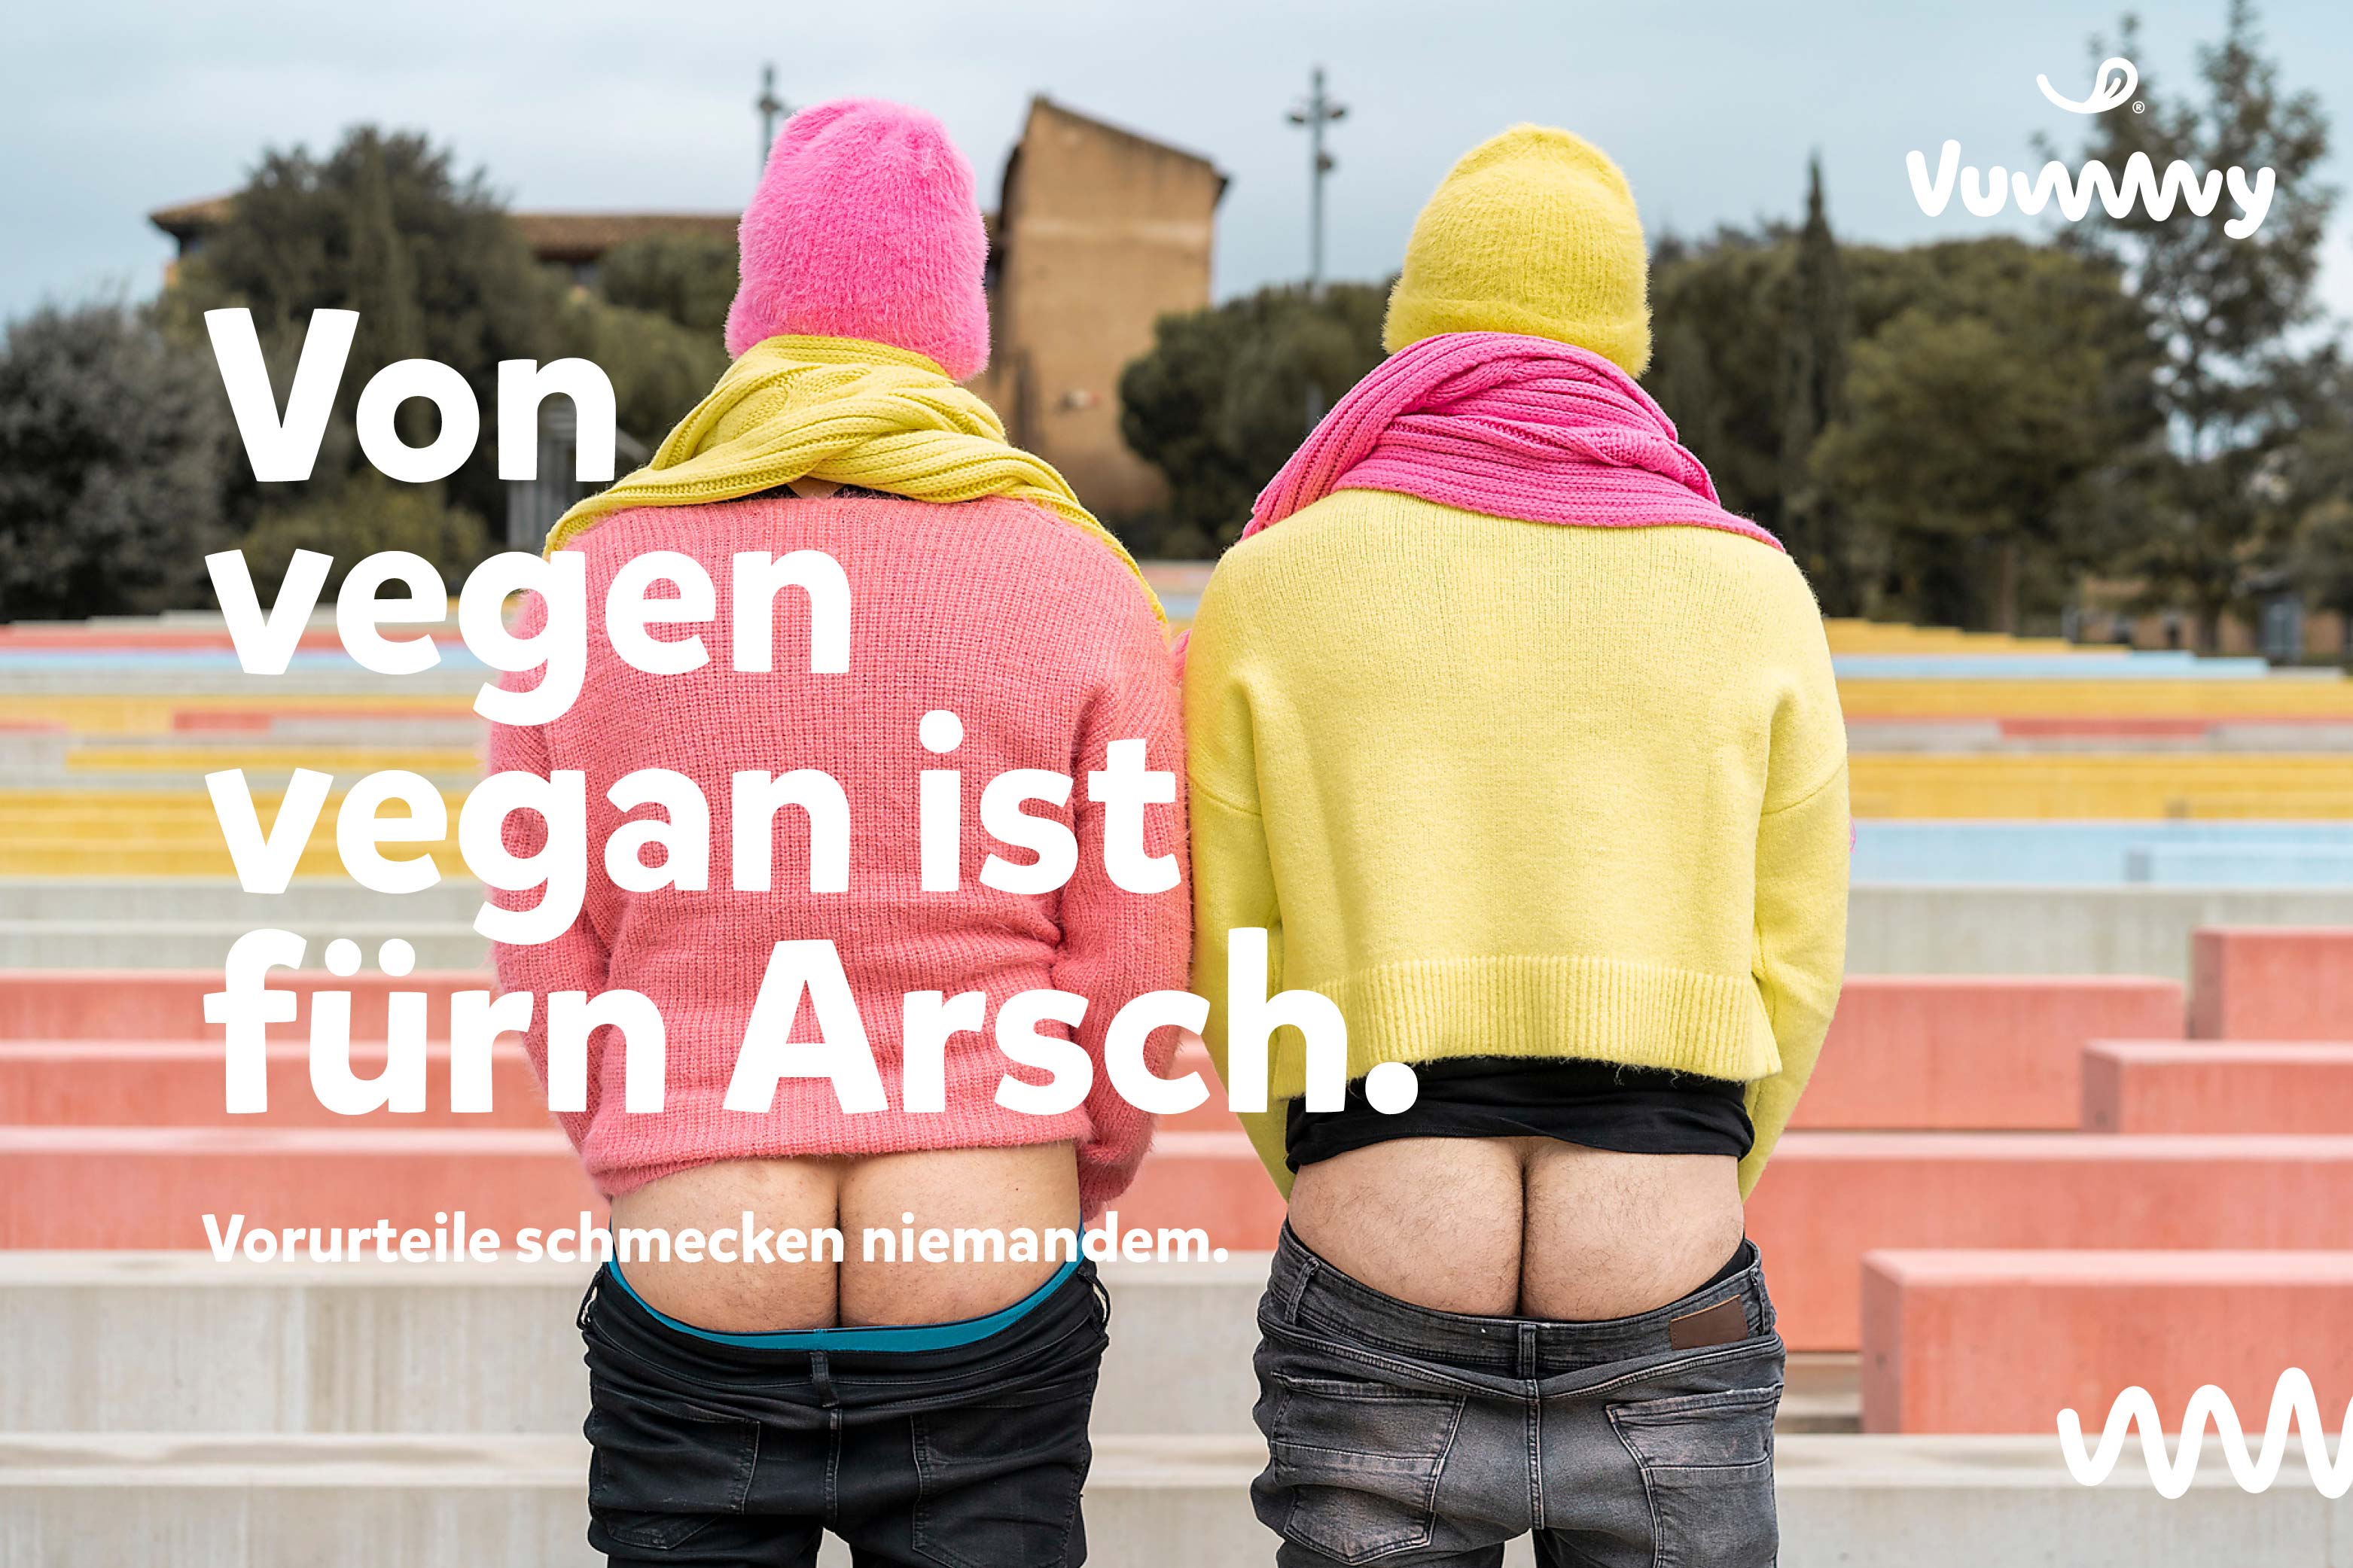 Werbeplakat für Vummy entworfen mit dem Slogan 'Von wegen vegan ist für'n Arsch', auf dem ein Paar von hinten mit entblößtem Hintern zu sehen ist."